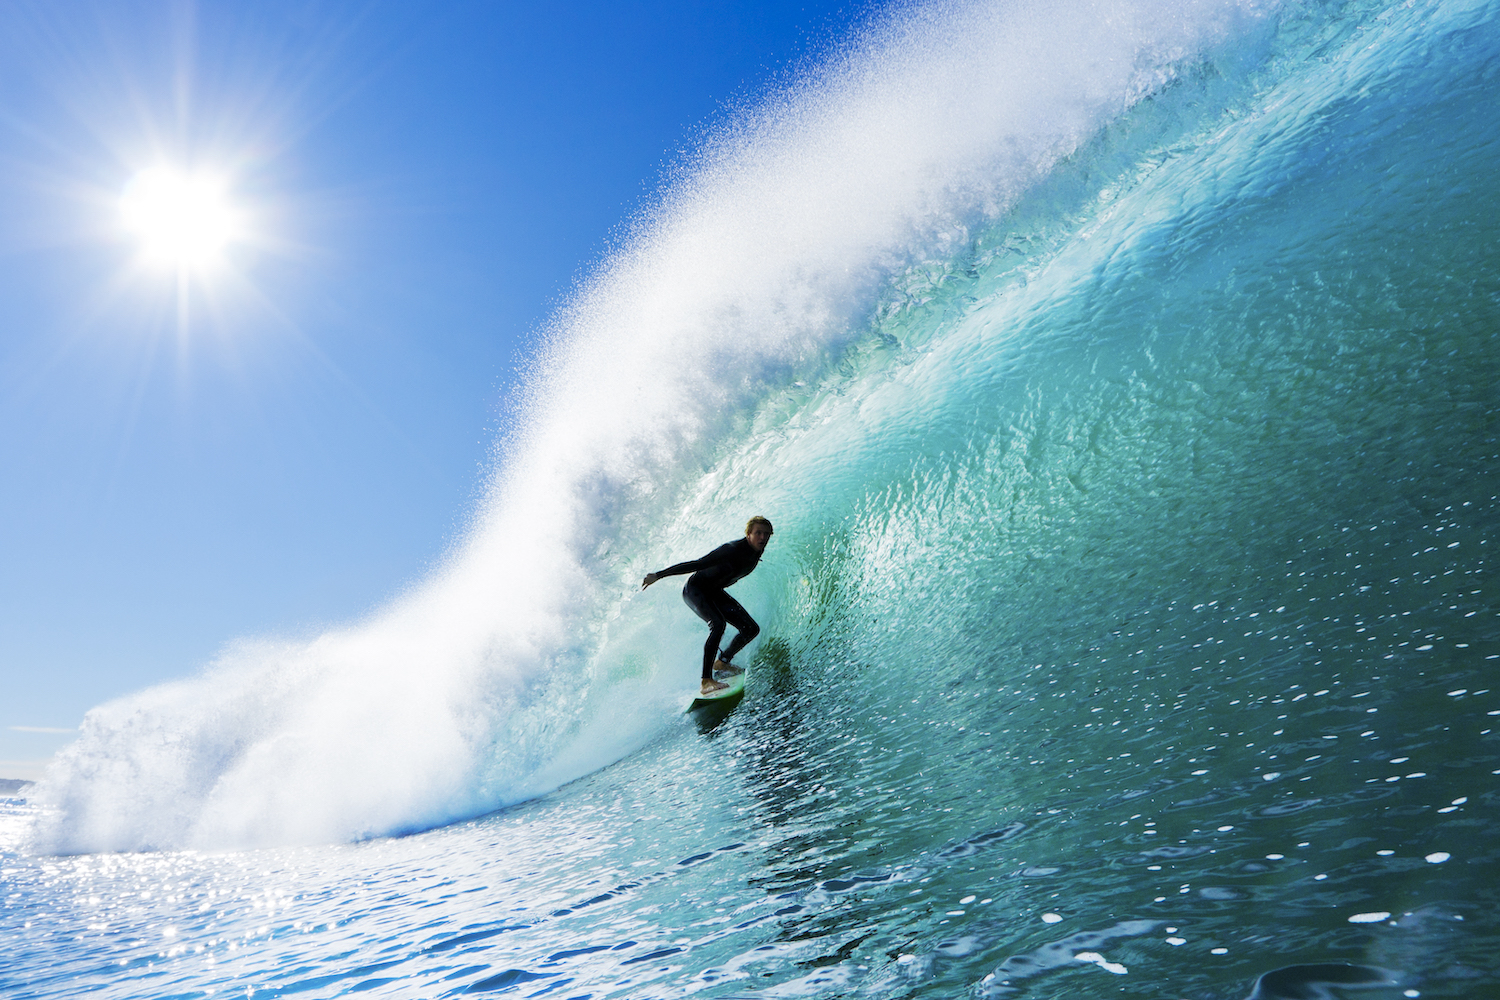 Aussie surfers sense golden opportunity